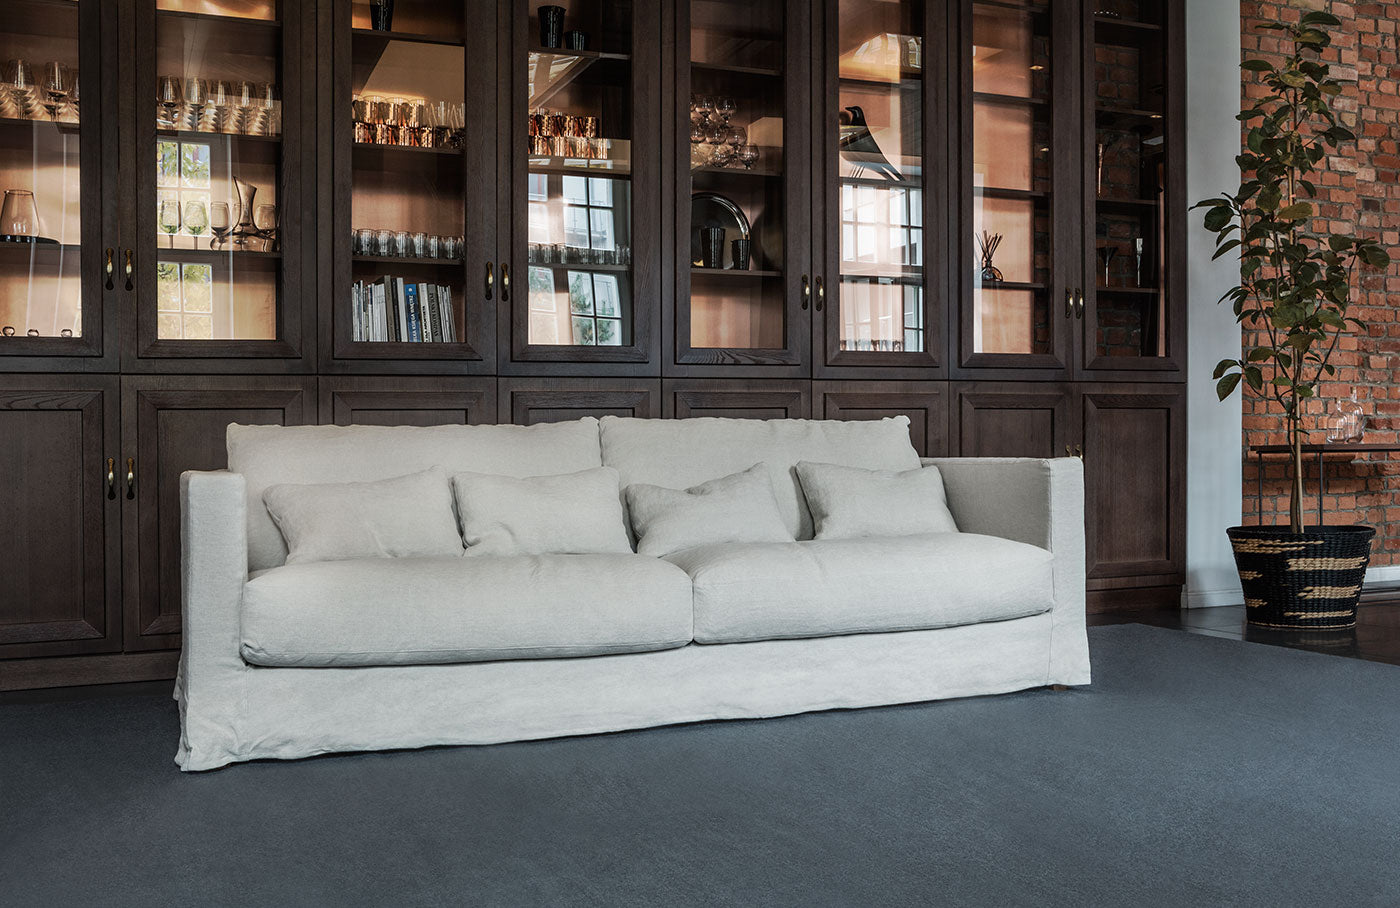 Shoppen Sie jetzt einzigartige Big Sofas mit tiefer Sitzfläche! - bei livingforme.de